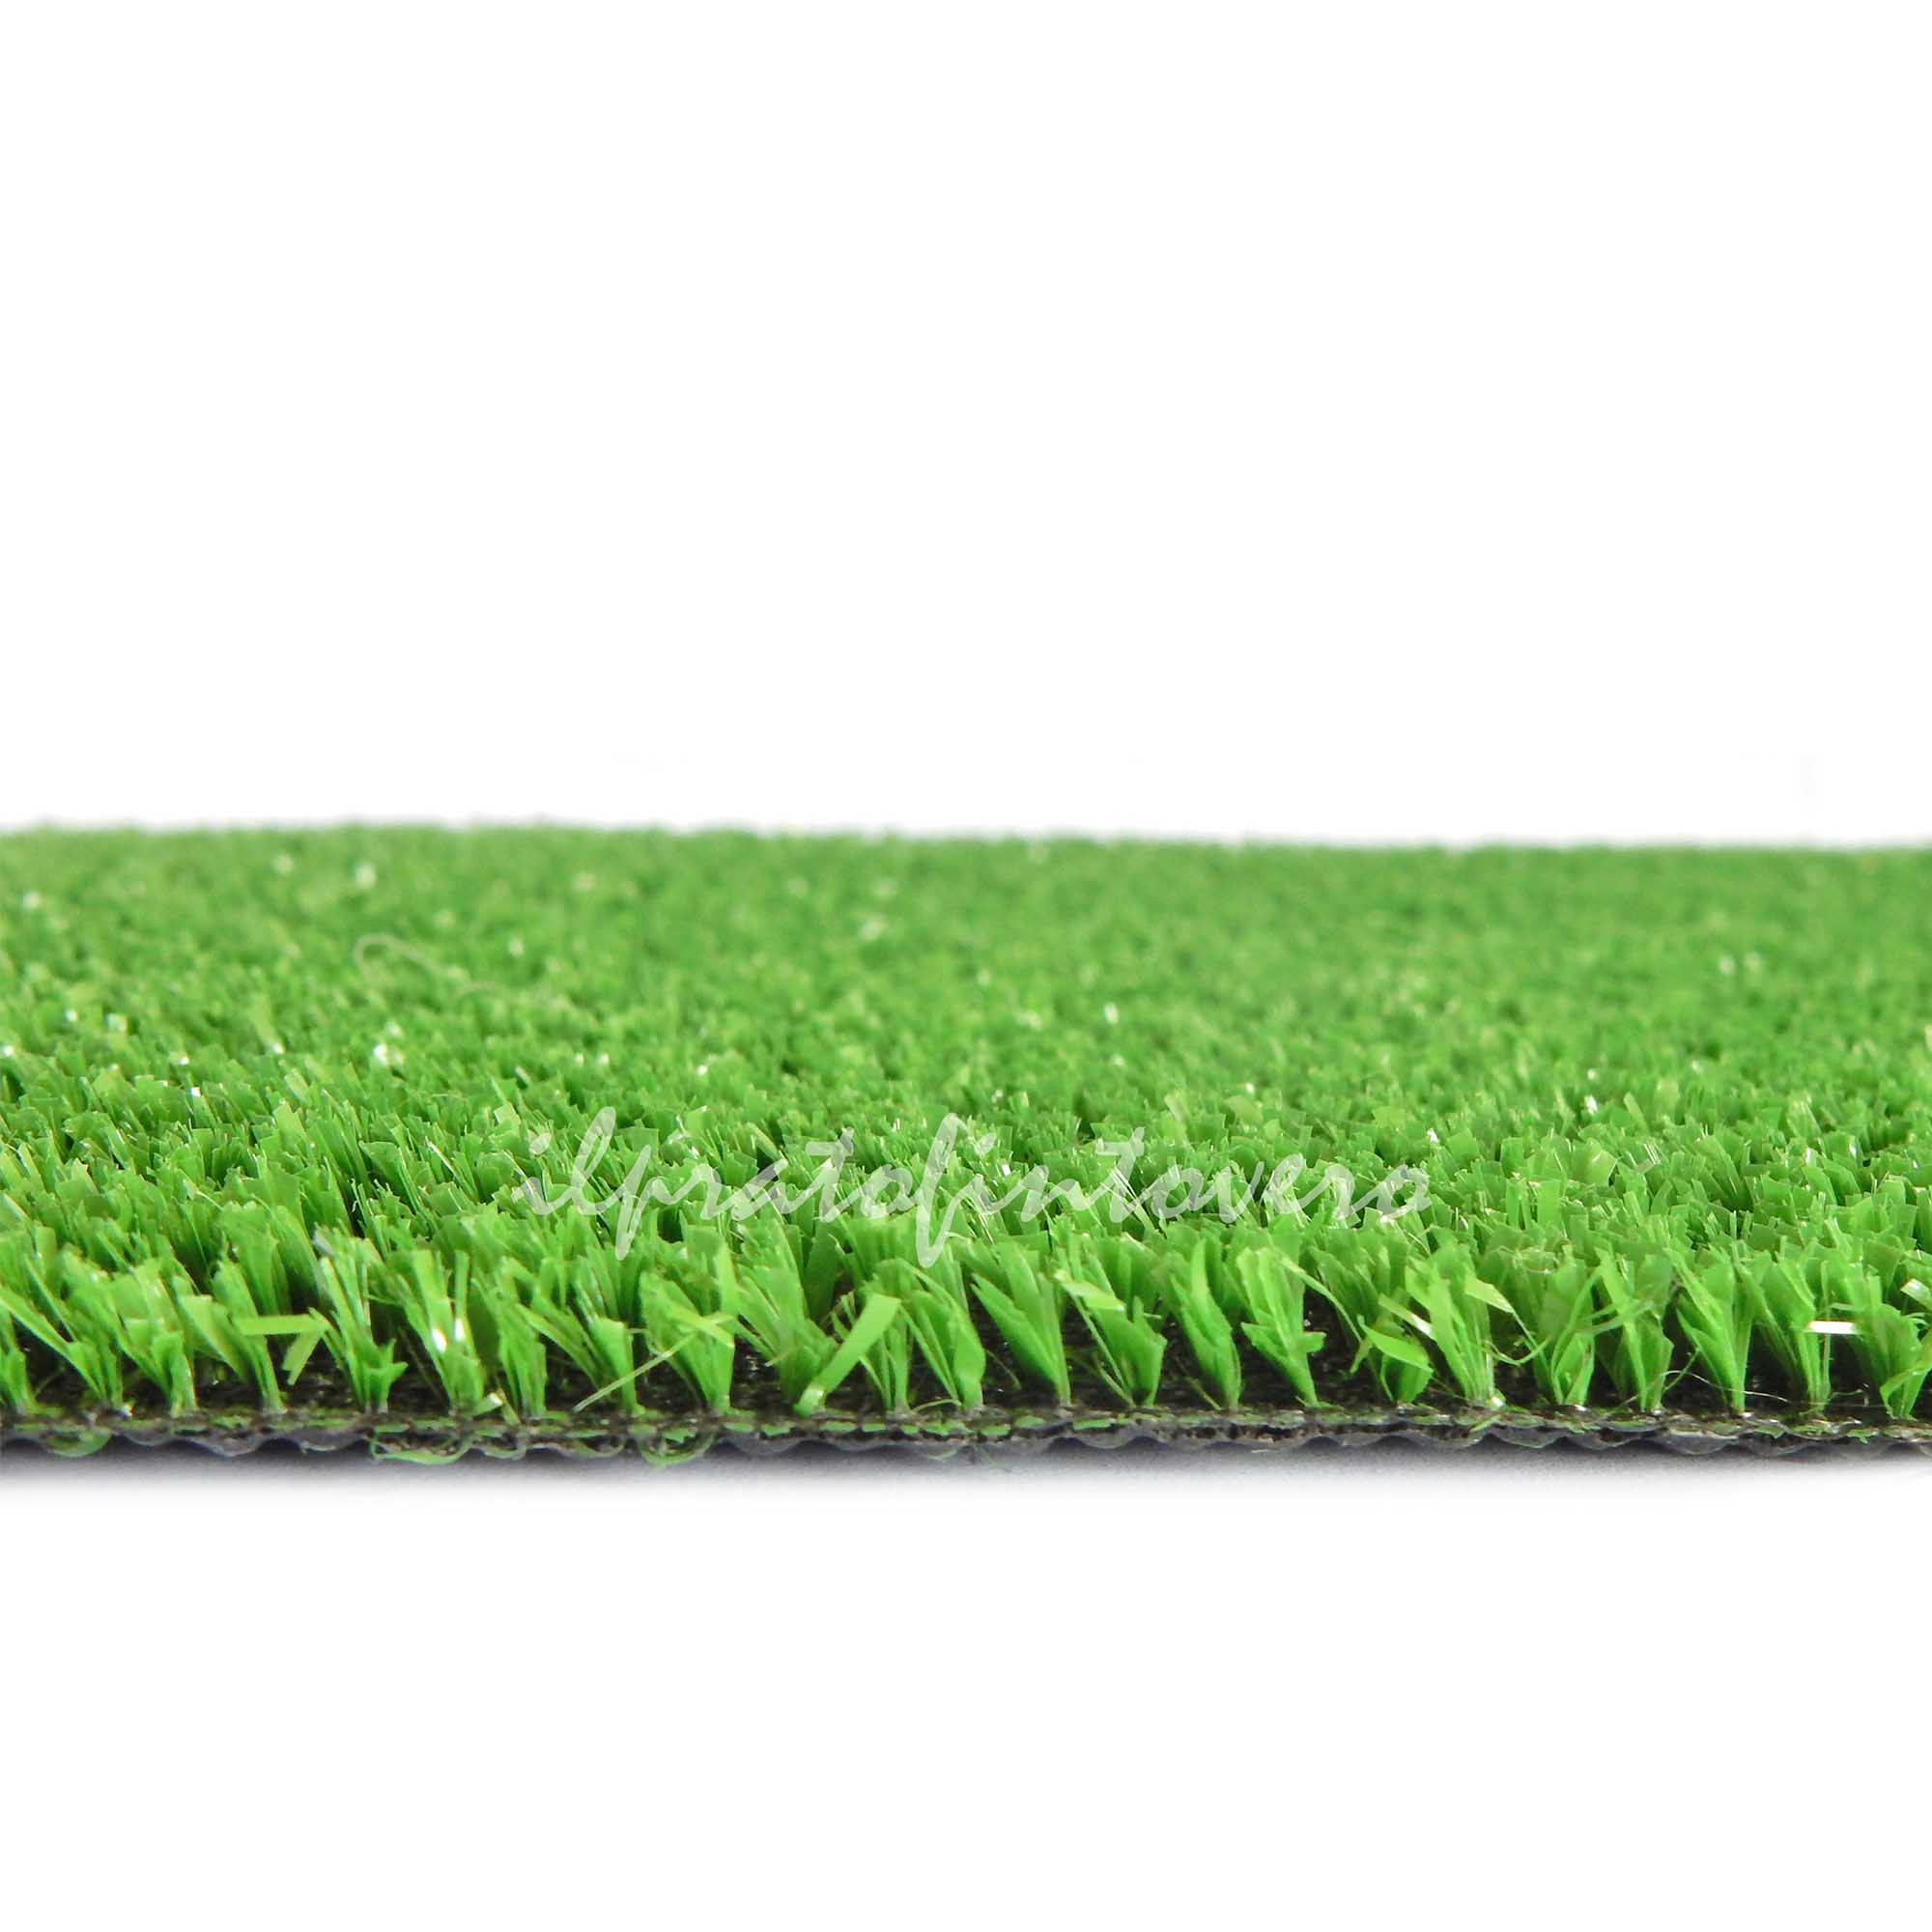 1x2 metri H36 Vetrineinrete® Erba sintetica 7 mm tappeto verde prato artificiale 2 4 mt per giardino terrazzo moquette 